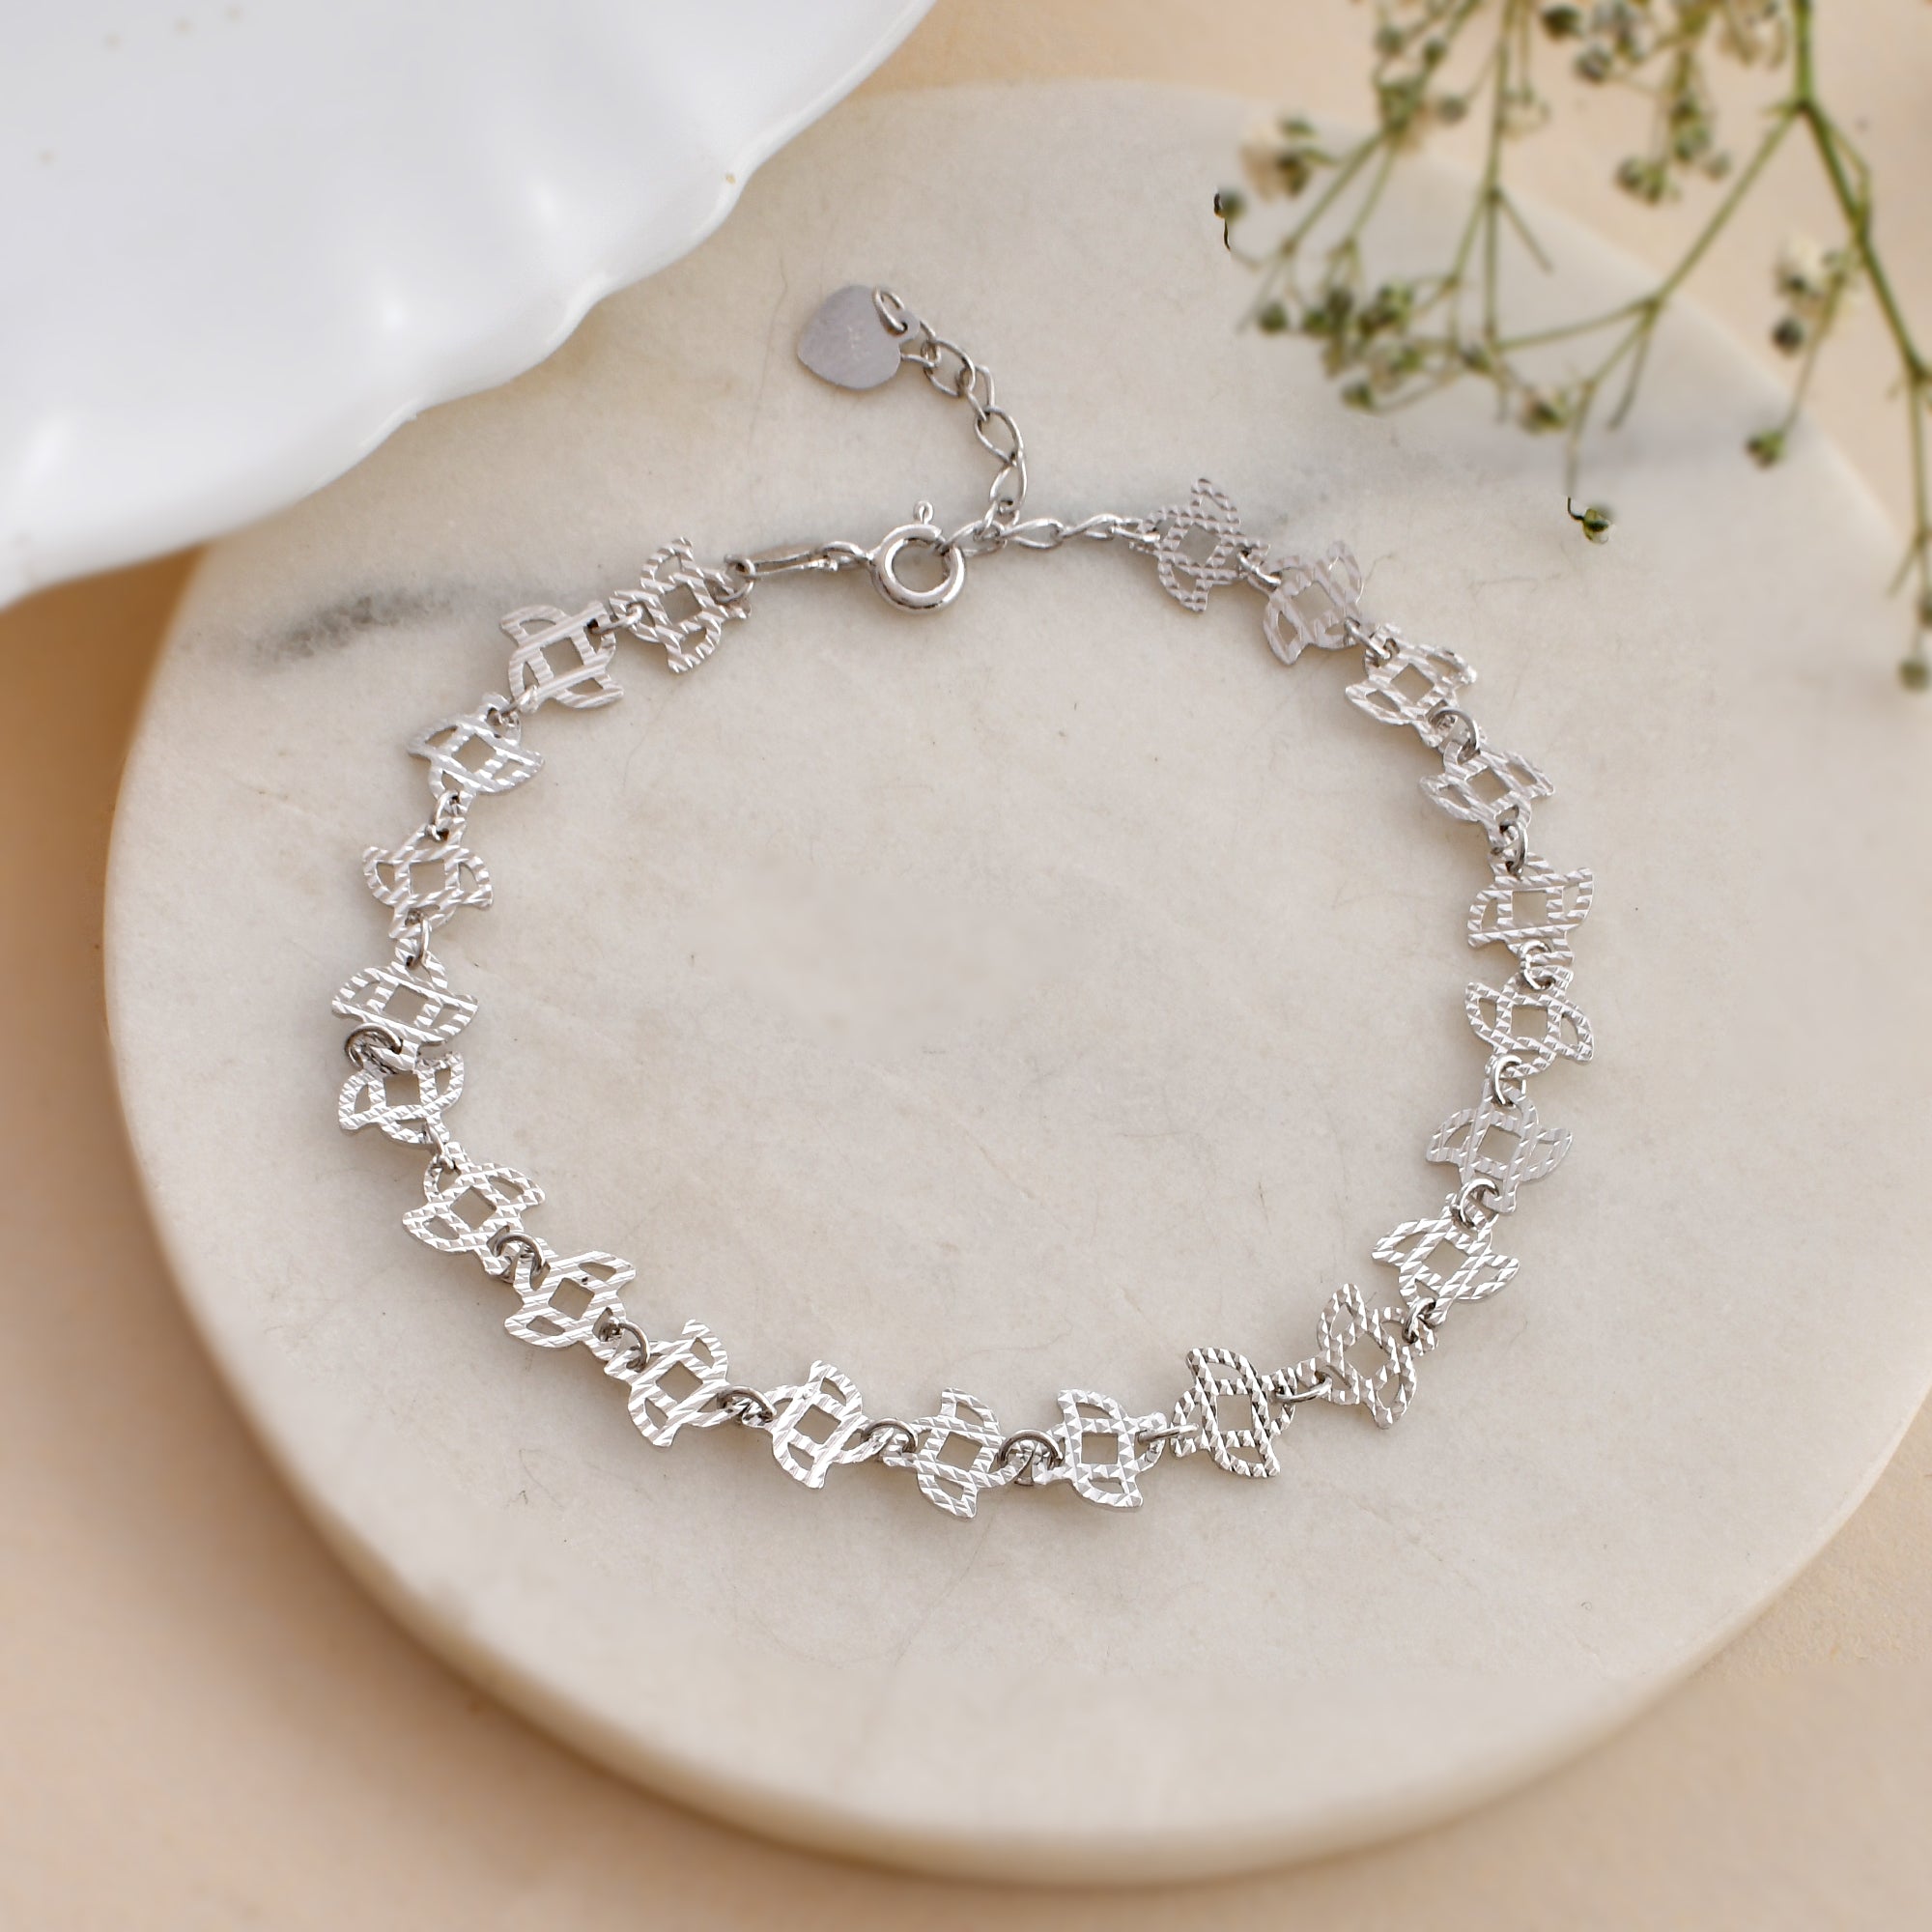 Buy quality Fancy silver Bracelet in Surat